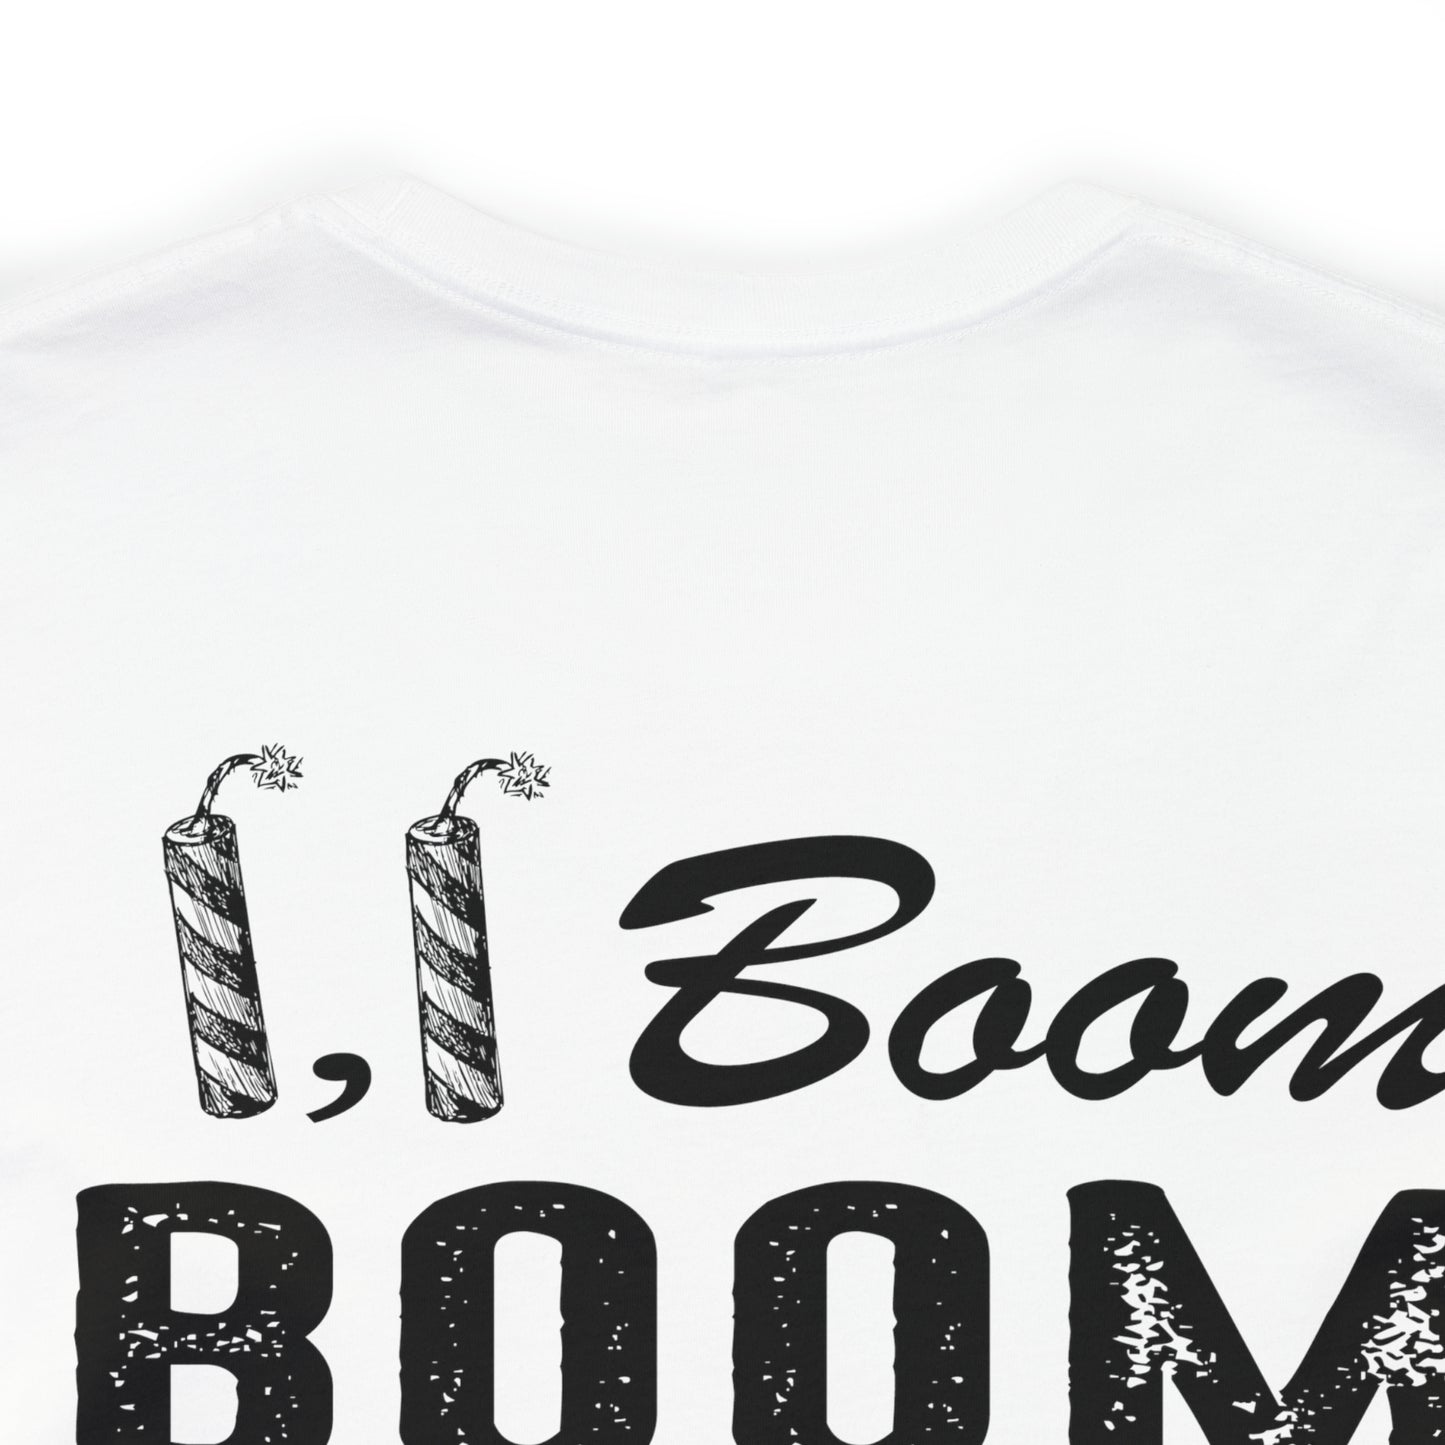 Firecracker, Firecracker, boom boom boom Adult Tshirt